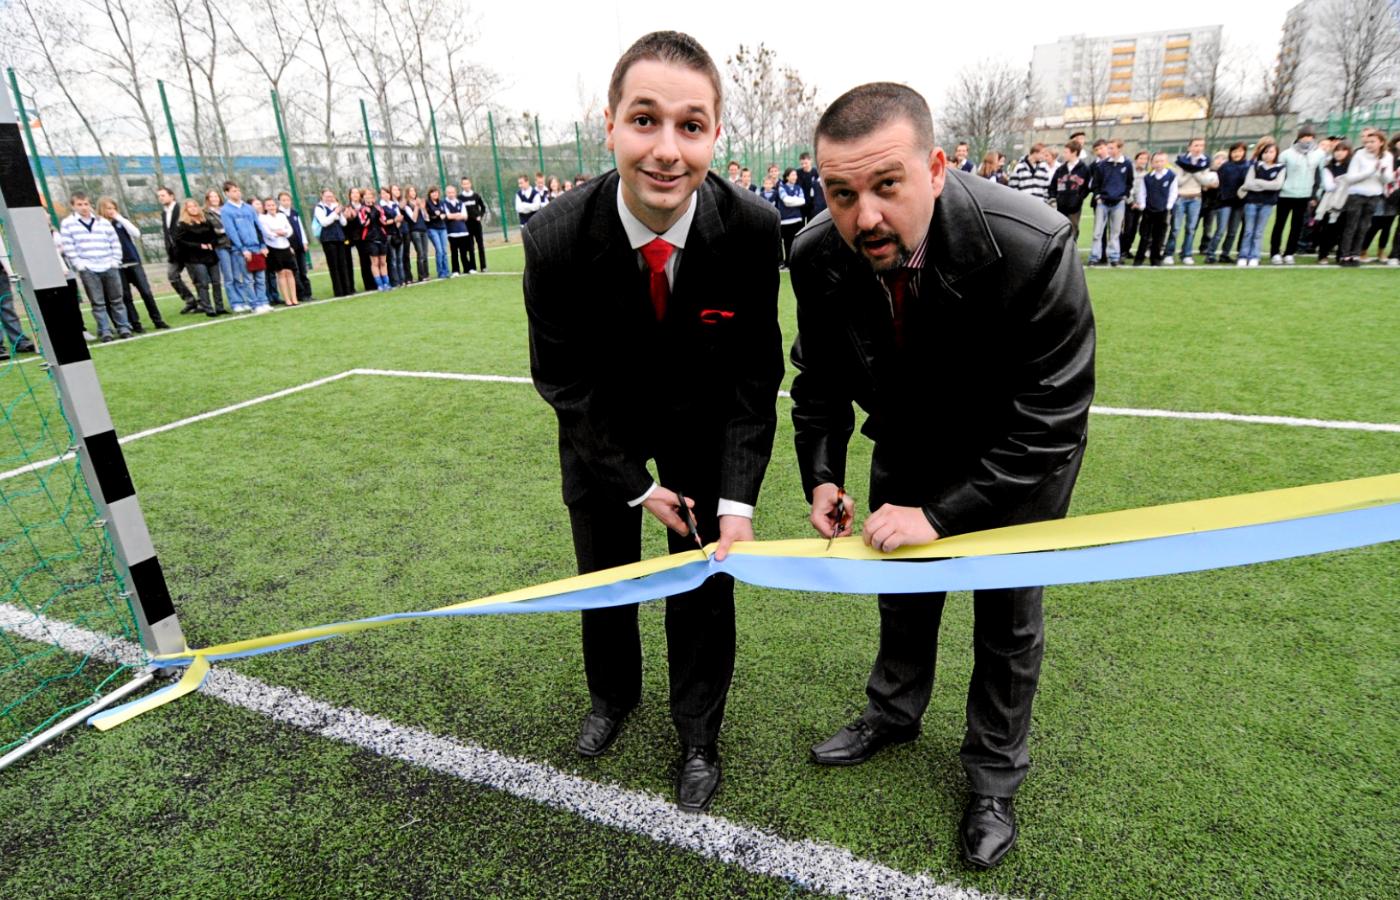 Patryk Jaki i Arkadiusz Karbowiak otwierają boisko w Opolu w 2008 r.